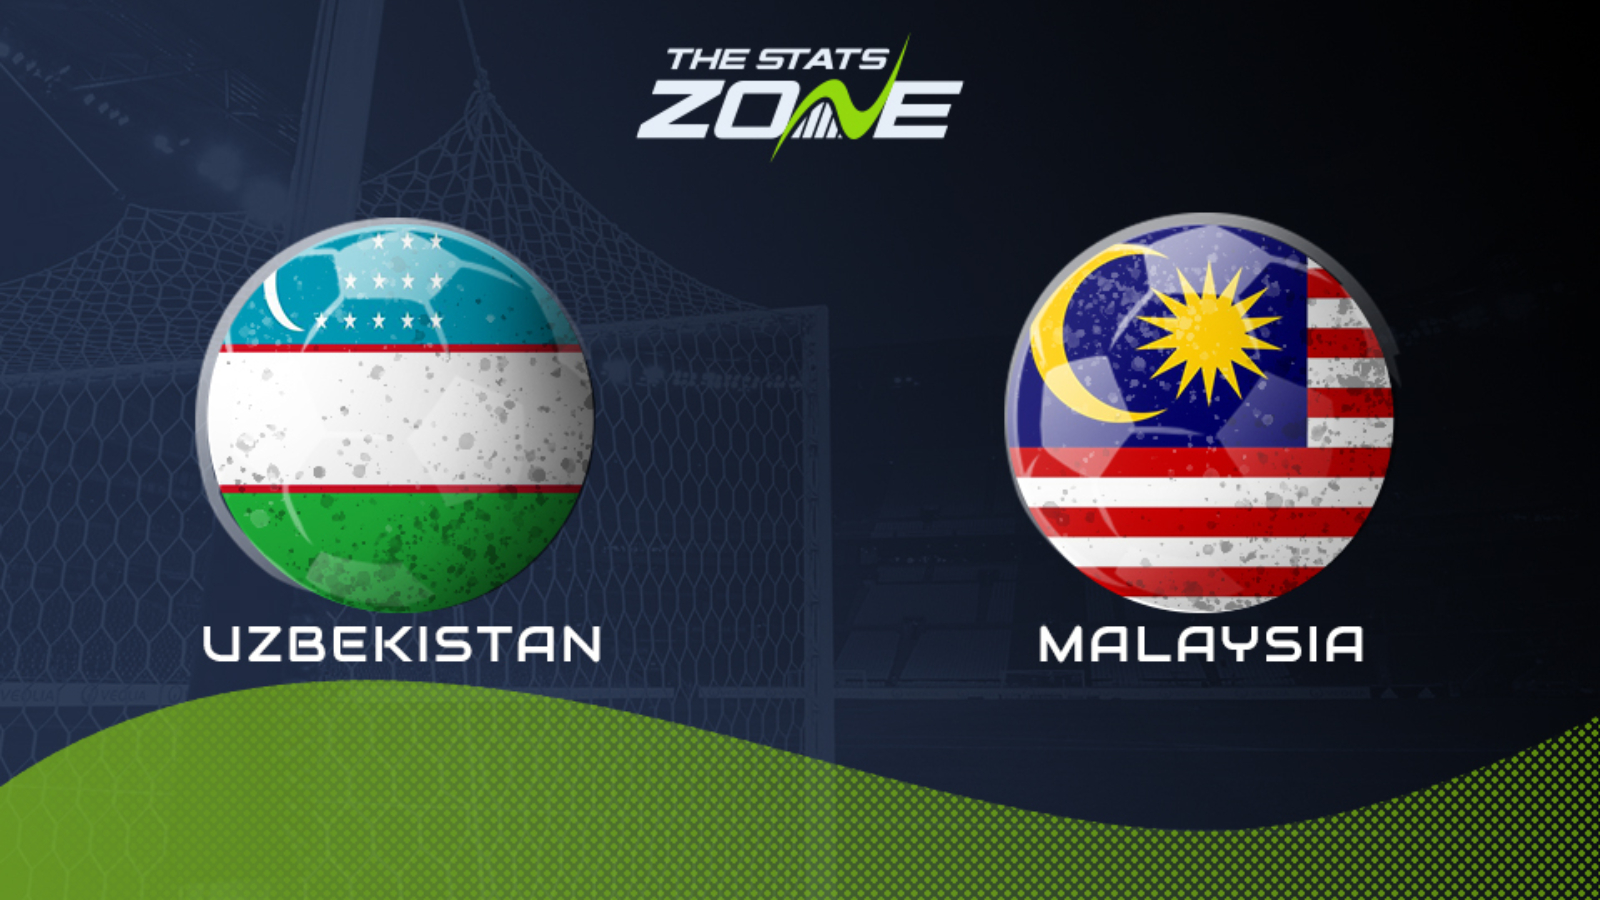 Malaysia friendly match